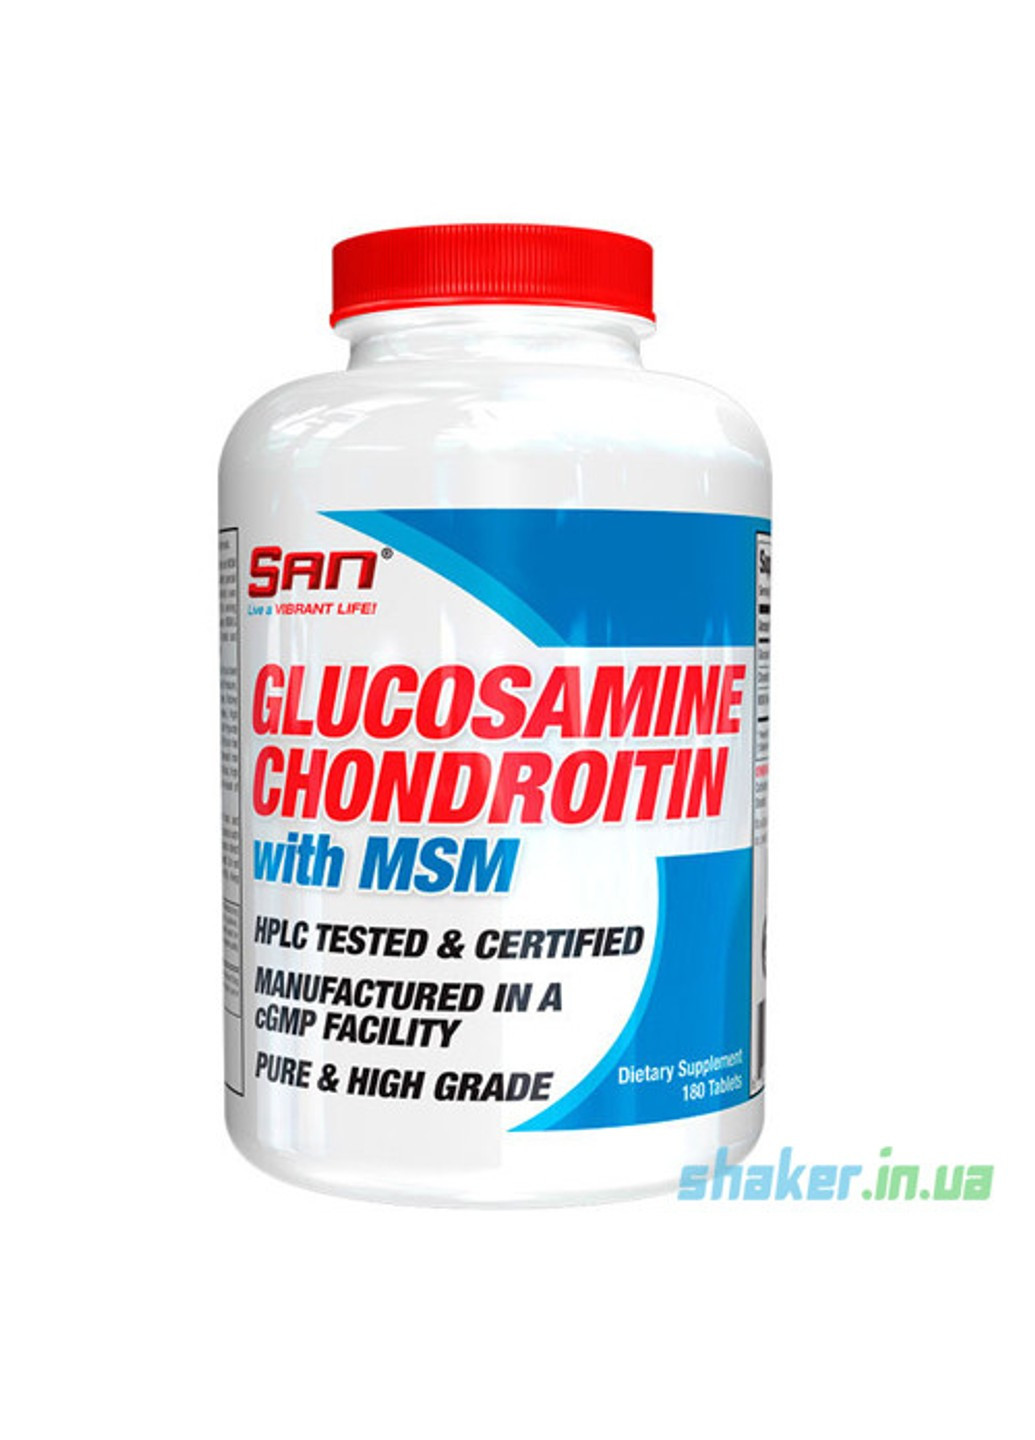 Глюкозамин хондроитин МСМ Glucosamine Chondroitin with MSM (180 таб) сан San (255408854)